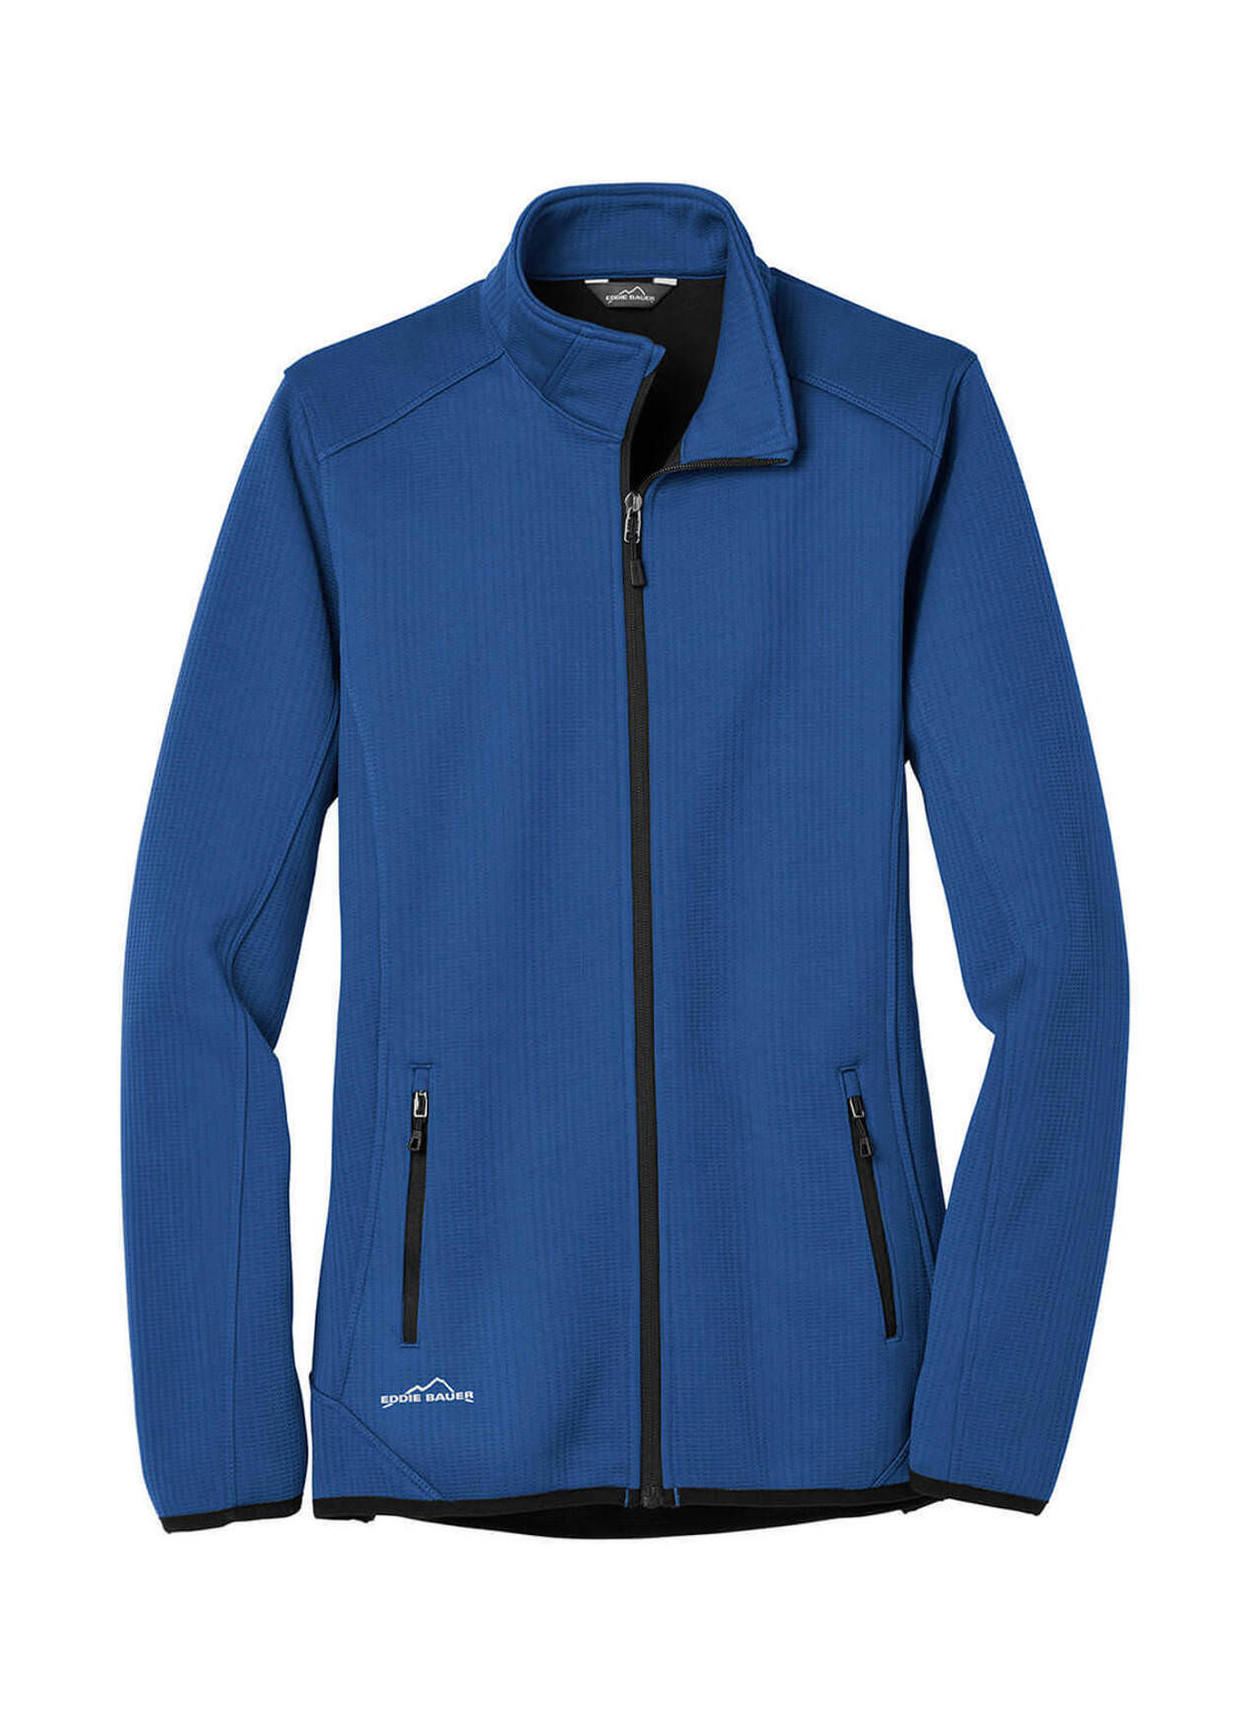 Eddie Bauer Women's Cobalt Blue Dash Fleece Jacket